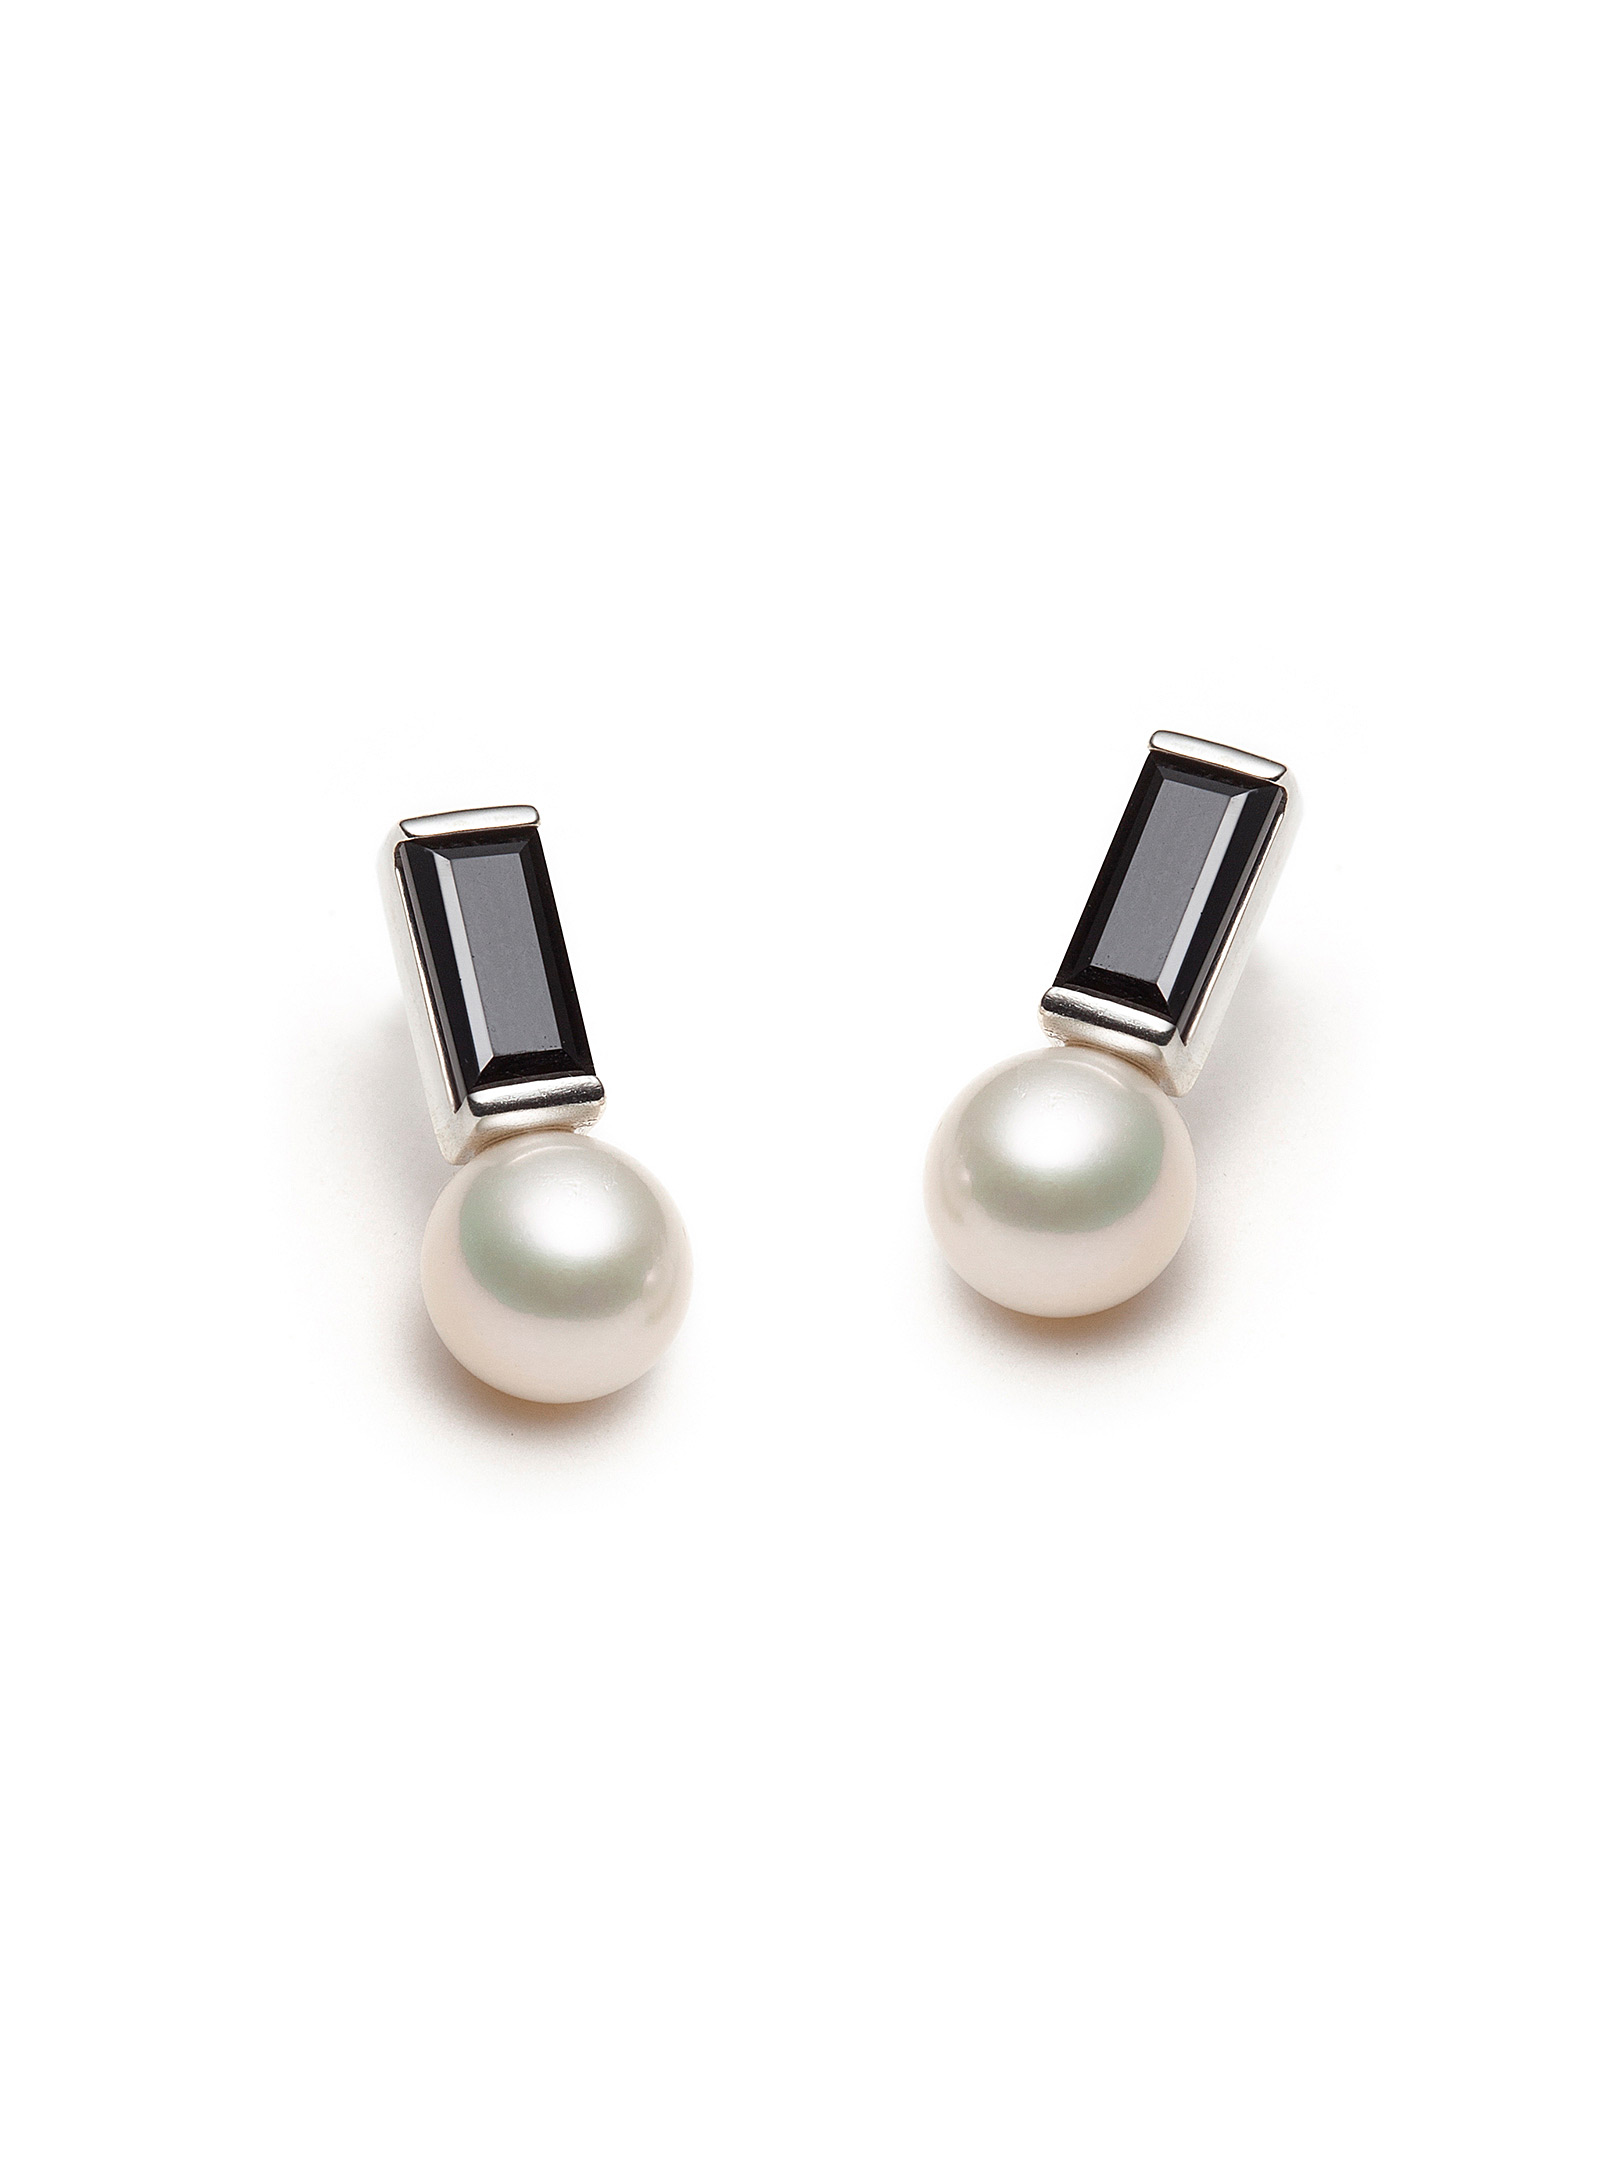 Atelier LAF - Baguette and pearl earrings